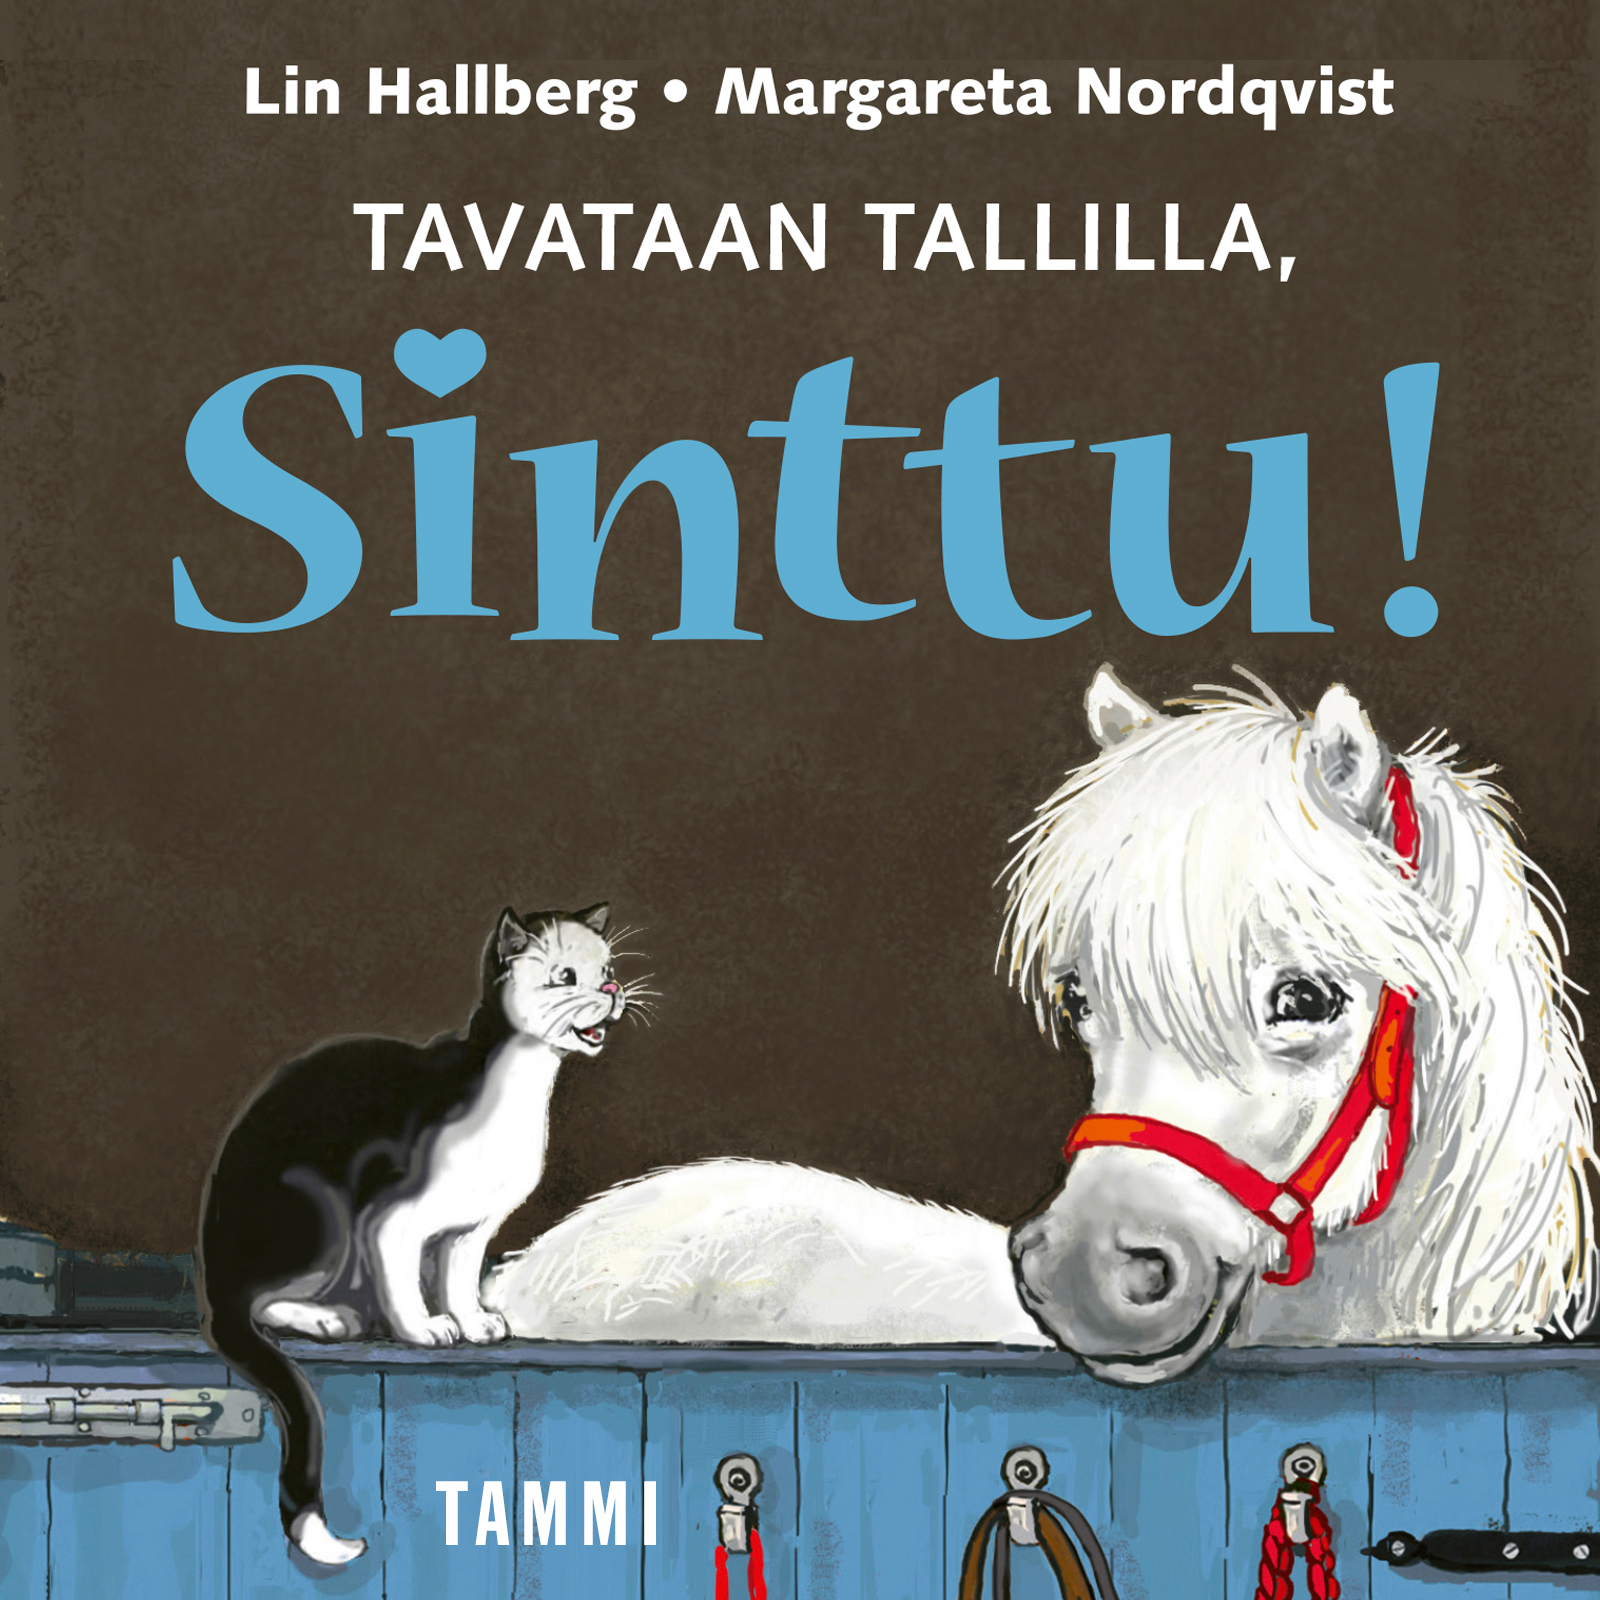 Hallberg, Lin - Tavataan tallilla, Sinttu!, audiobook